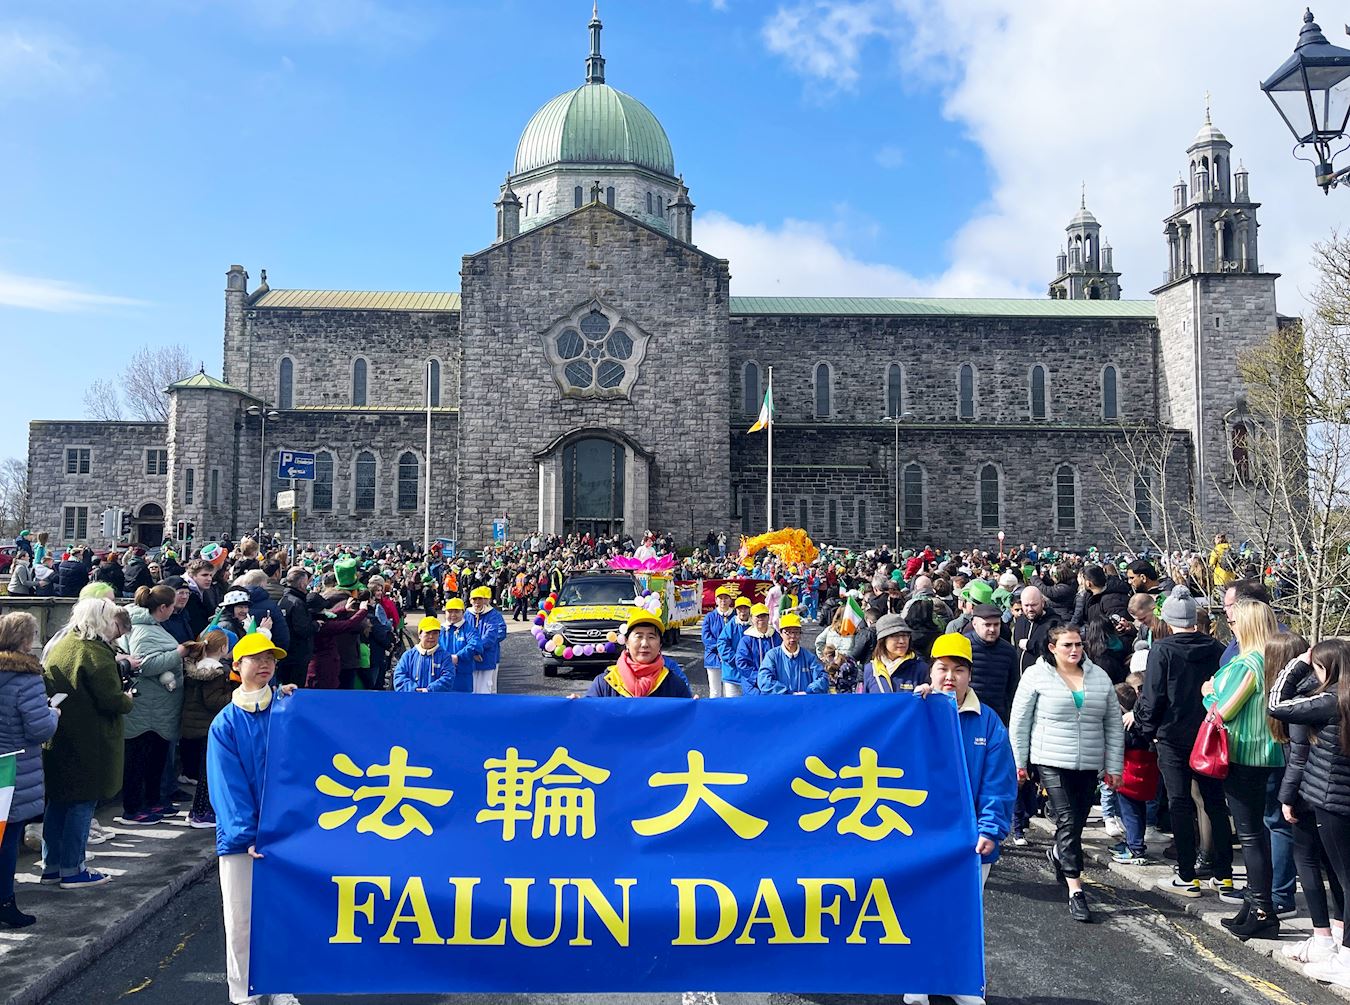 Image for article Irlanda: La Falun Dafa in primo piano nella parata del Giorno di San Patrizio a Galway